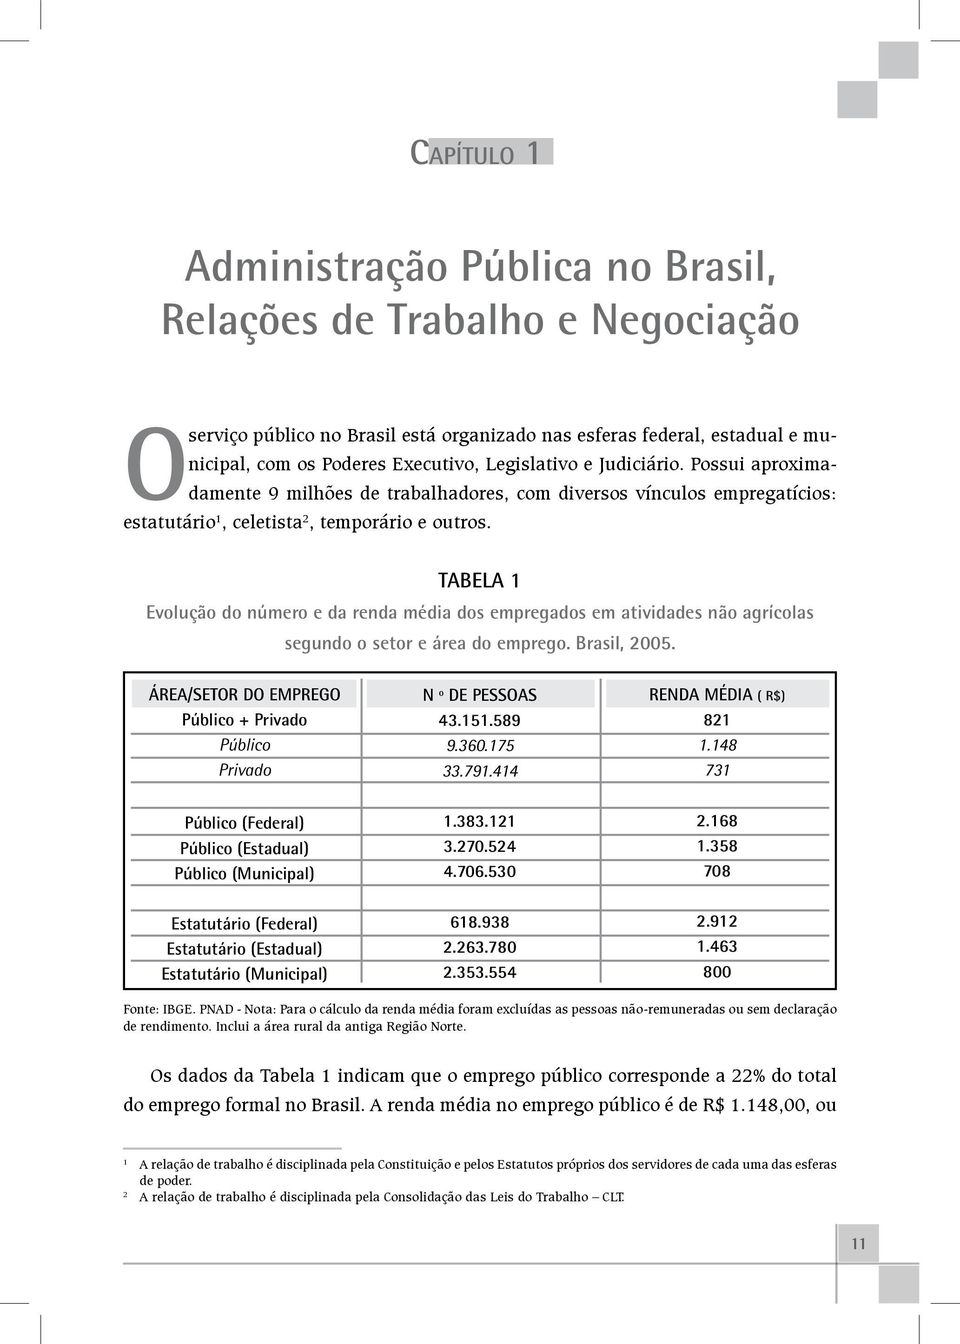 TABELA 1 Evolução do número e da renda média dos empregados em atividades não agrícolas segundo o setor e área do emprego. Brasil, 2005.